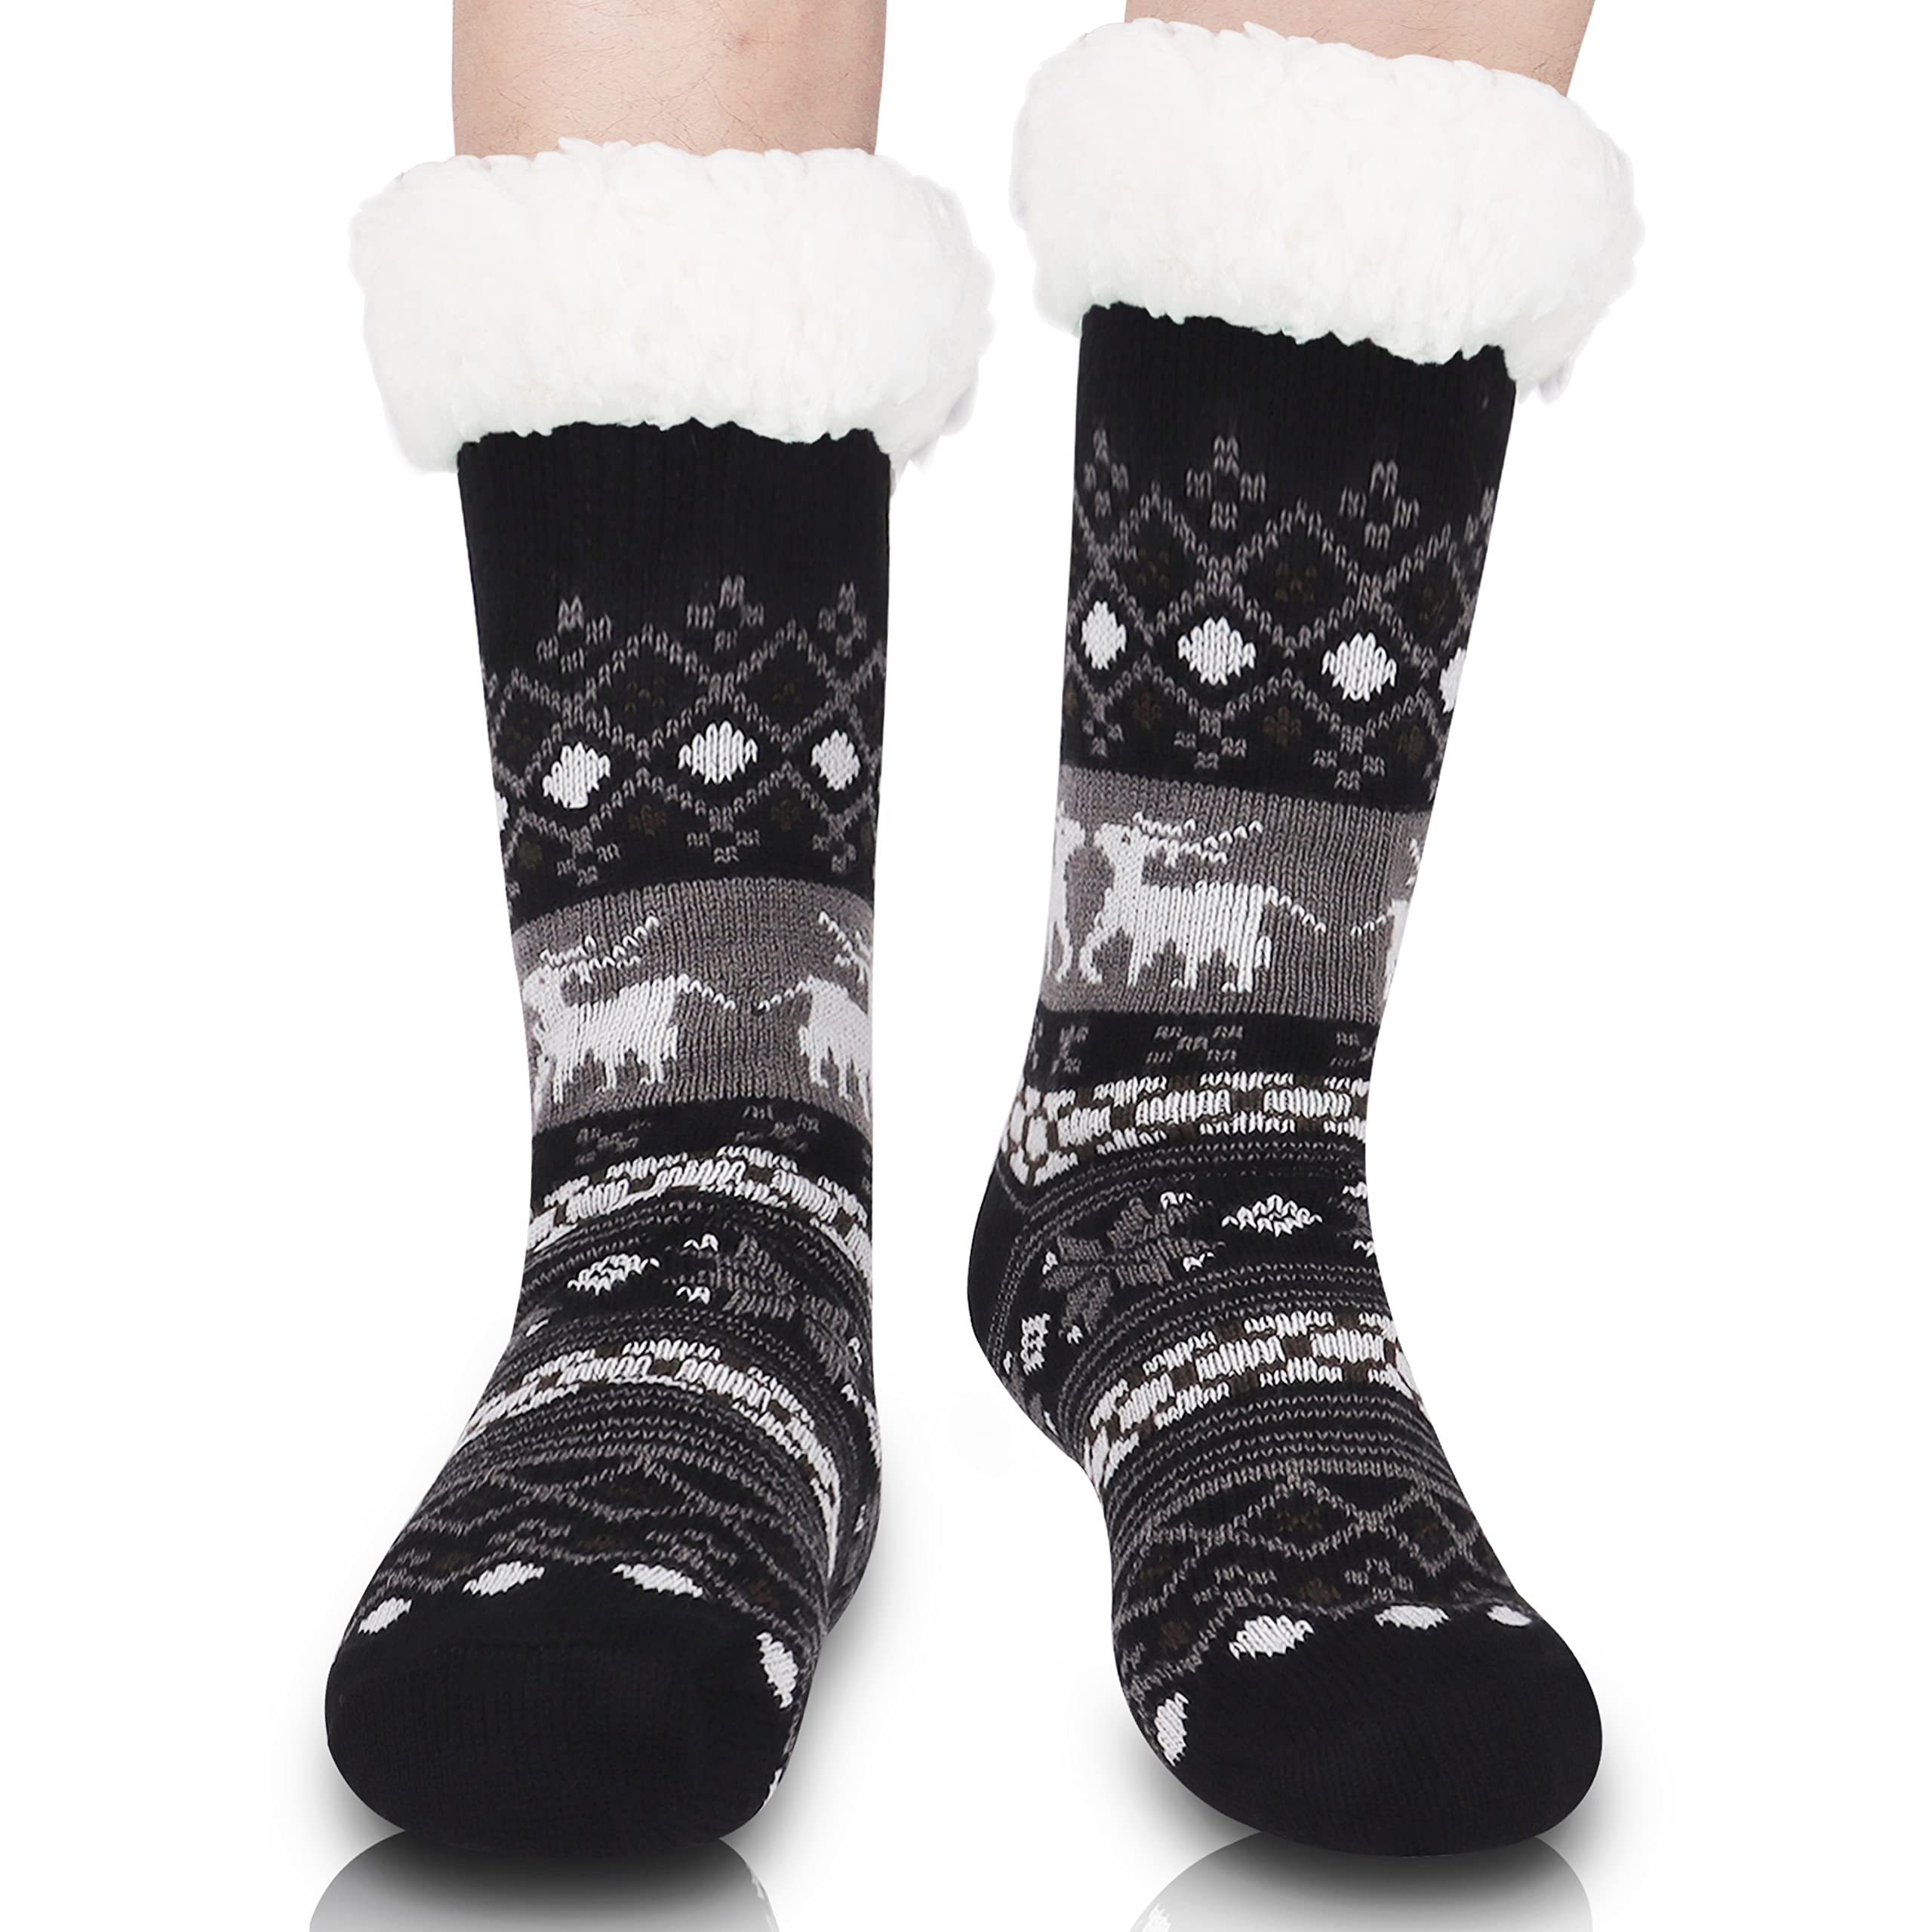 New Friends Thermal Slipper Socks - Item 322181